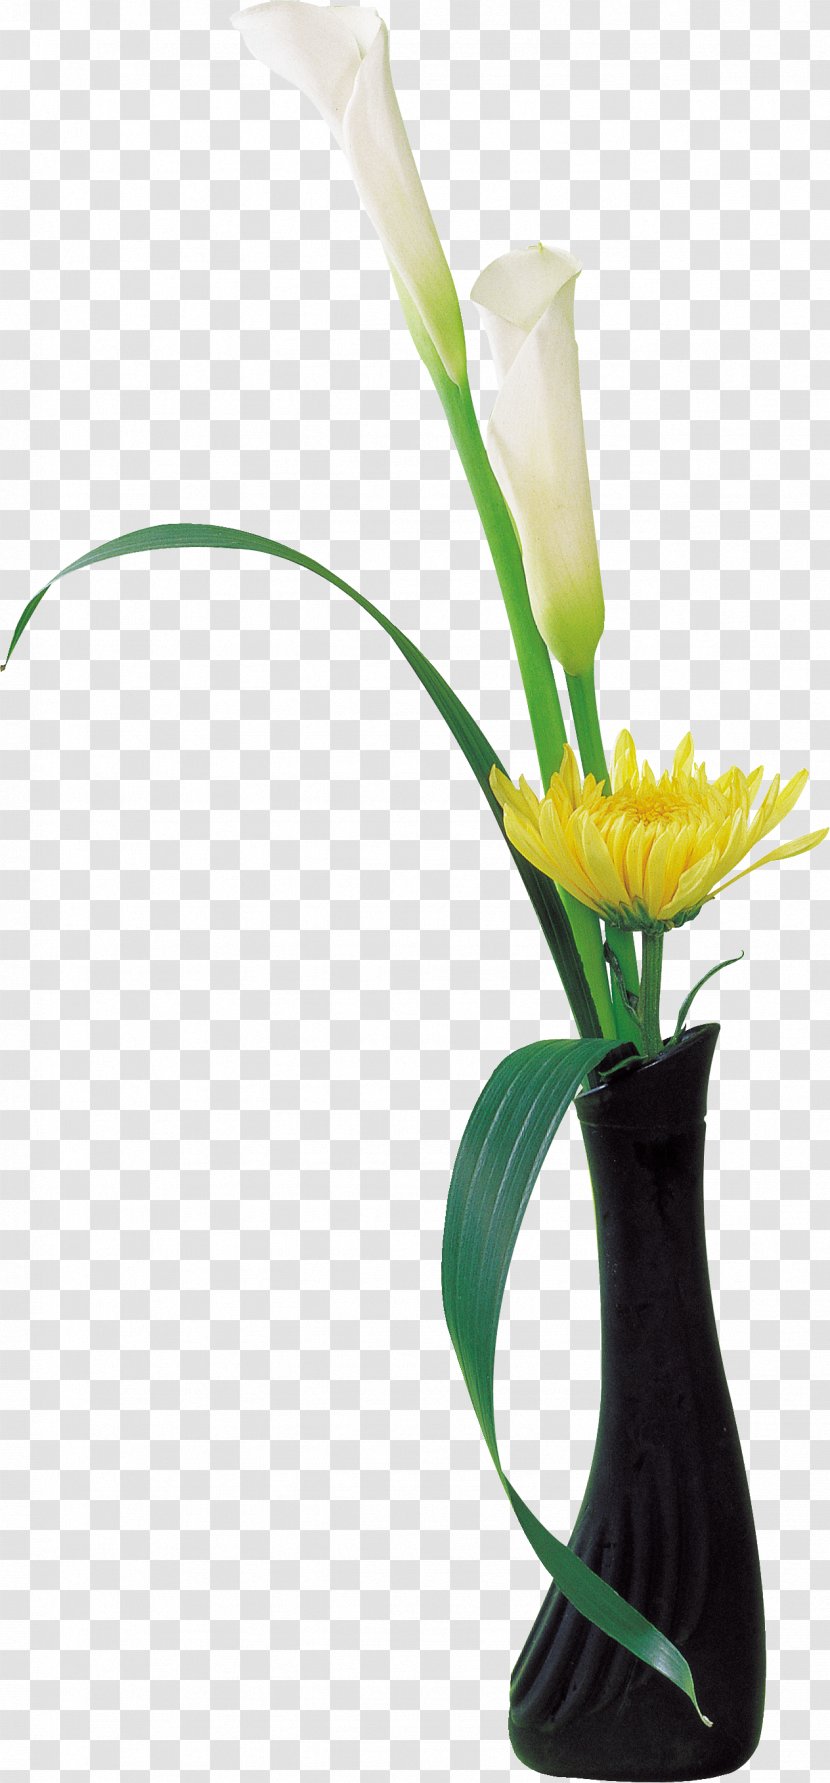 Cut Flowers Vase Flower Bouquet Flowerpot - Floral Design - Chrysanthemum Transparent PNG